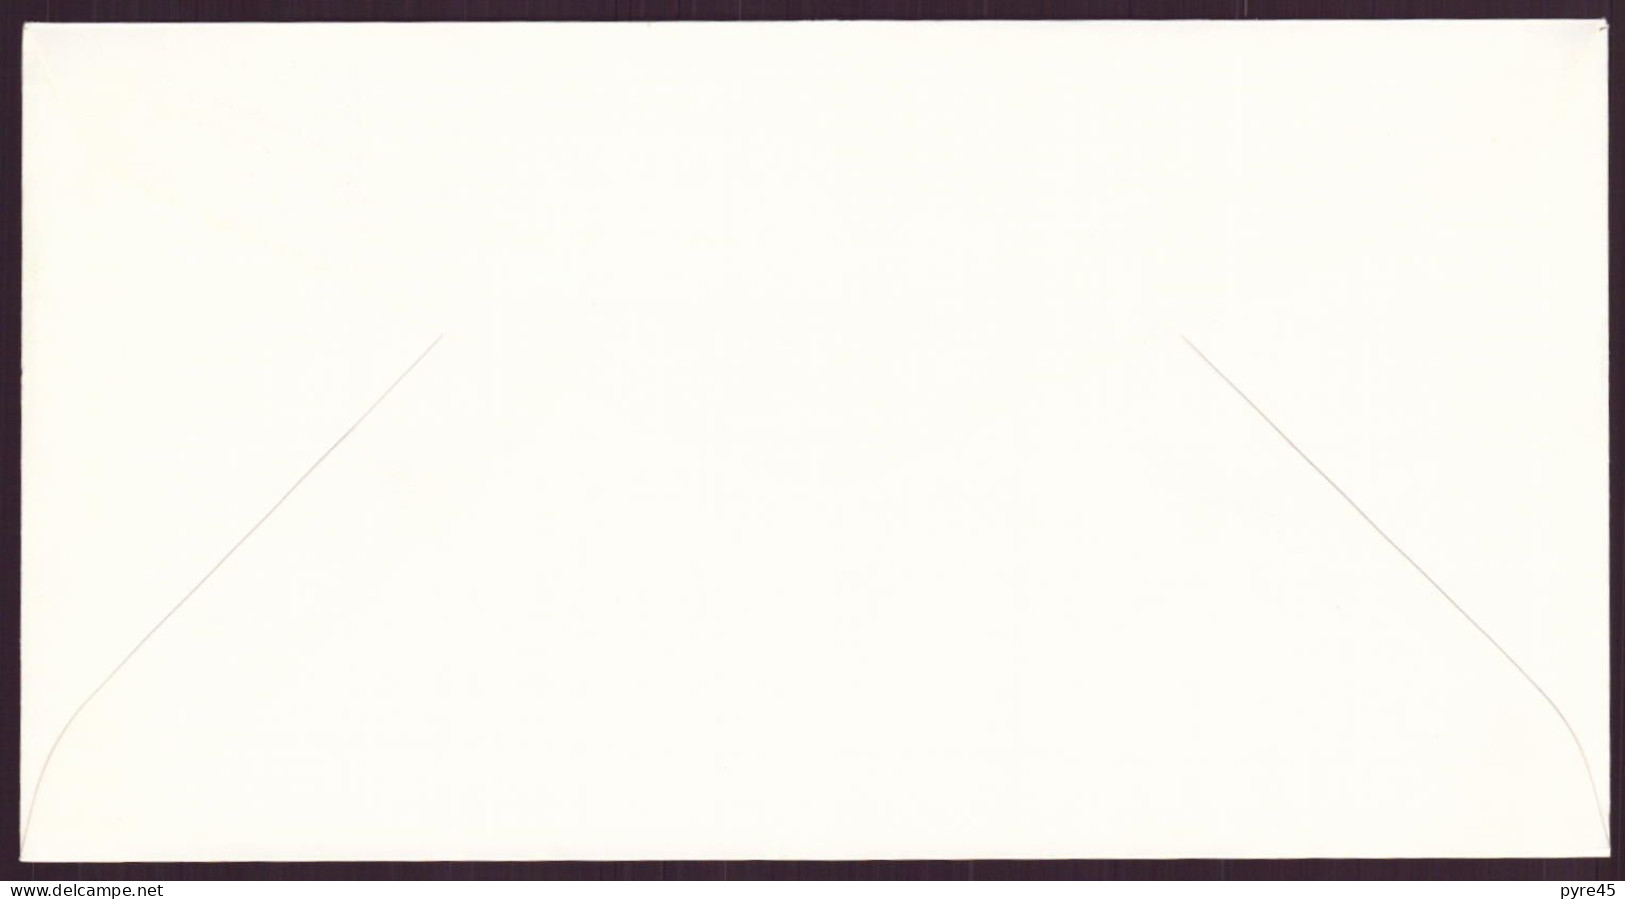 Pays-Bas, FDC, Enveloppe Du 22 Mai 1984 à Gravenhage " Europa " - FDC